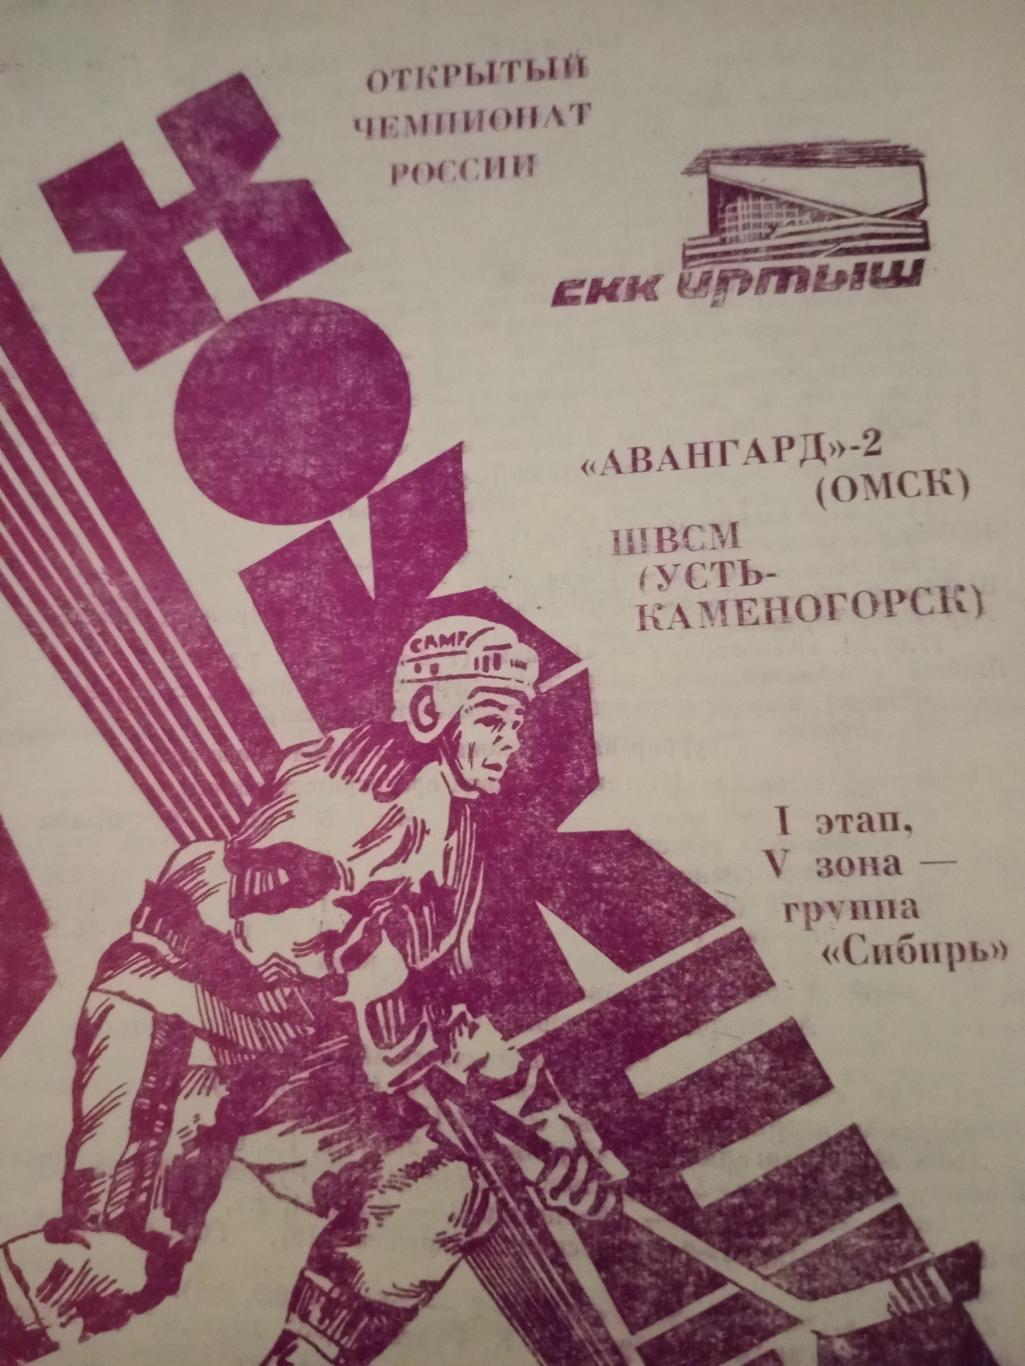 Гезетные отчеты+. Авангард-2 - ШВСМ Усть-Каменогорск. 21 и 22 сентября 1994 год